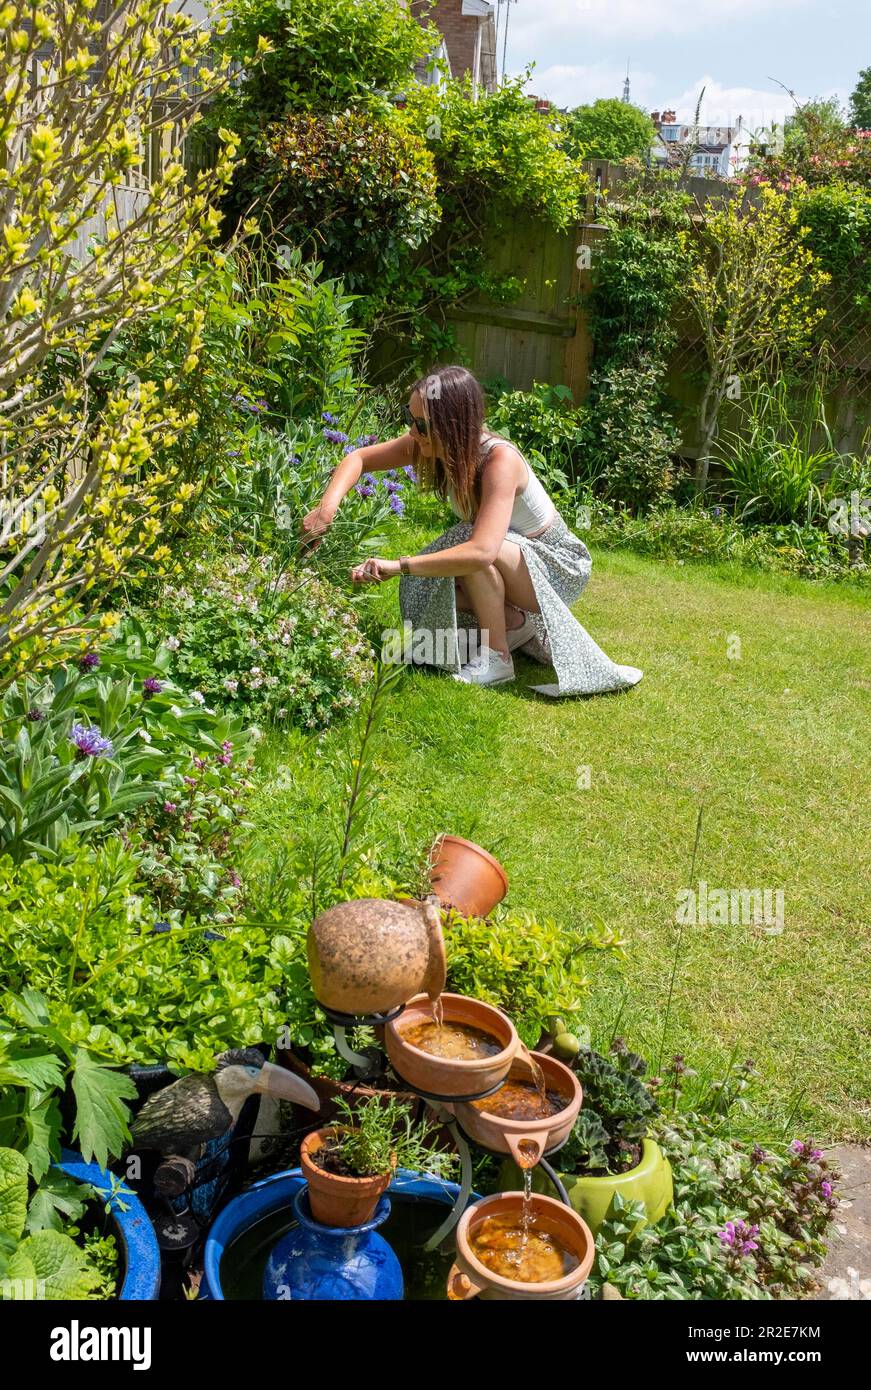 Une jeune femme de 30s ans qui a tendance à avoir un petit jardin urbain au soleil de printemps Banque D'Images